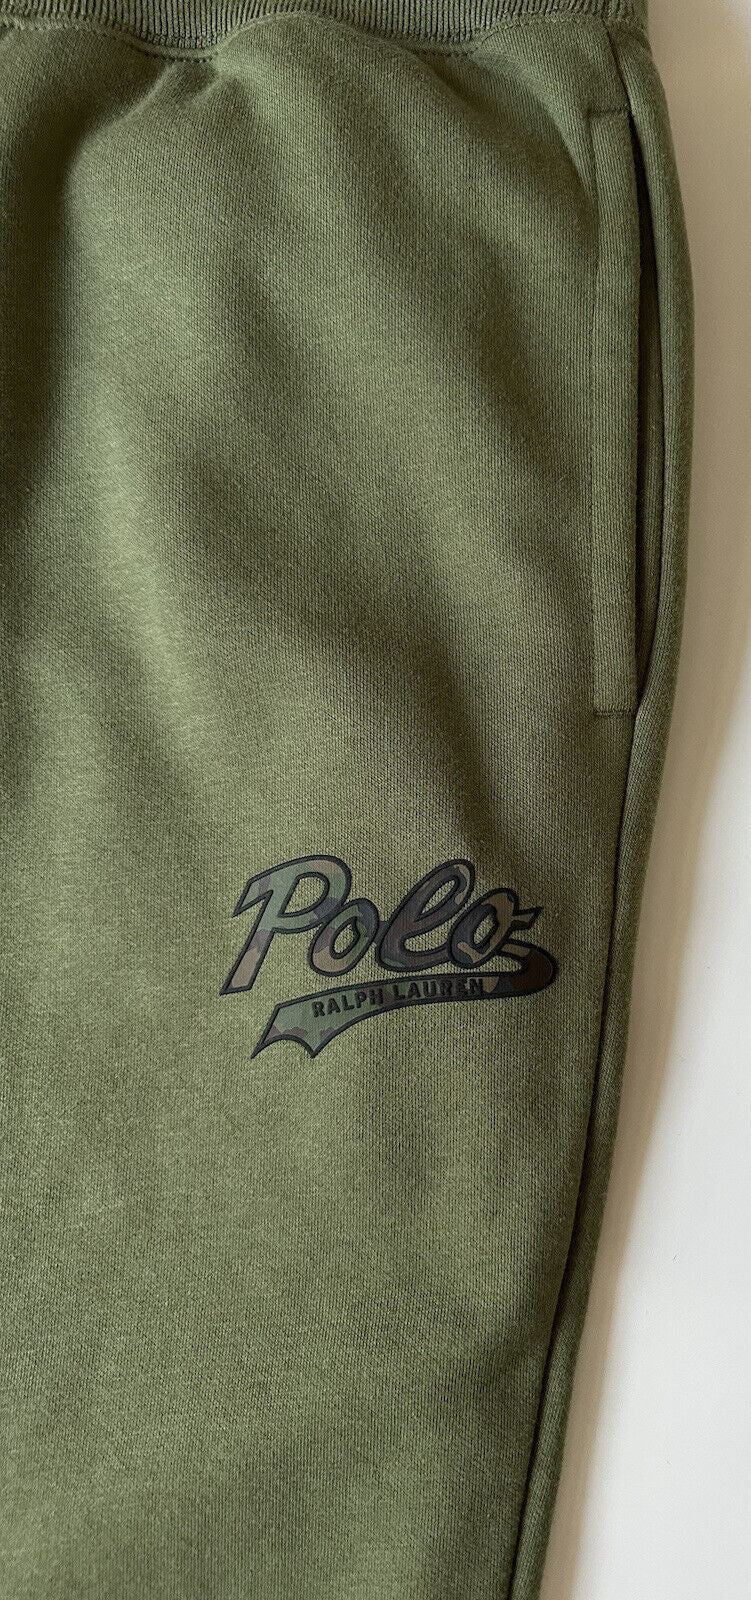 NWT $138 Polo Ralph Lauren Men's Polo Logo Green Casual Pants XL/TG